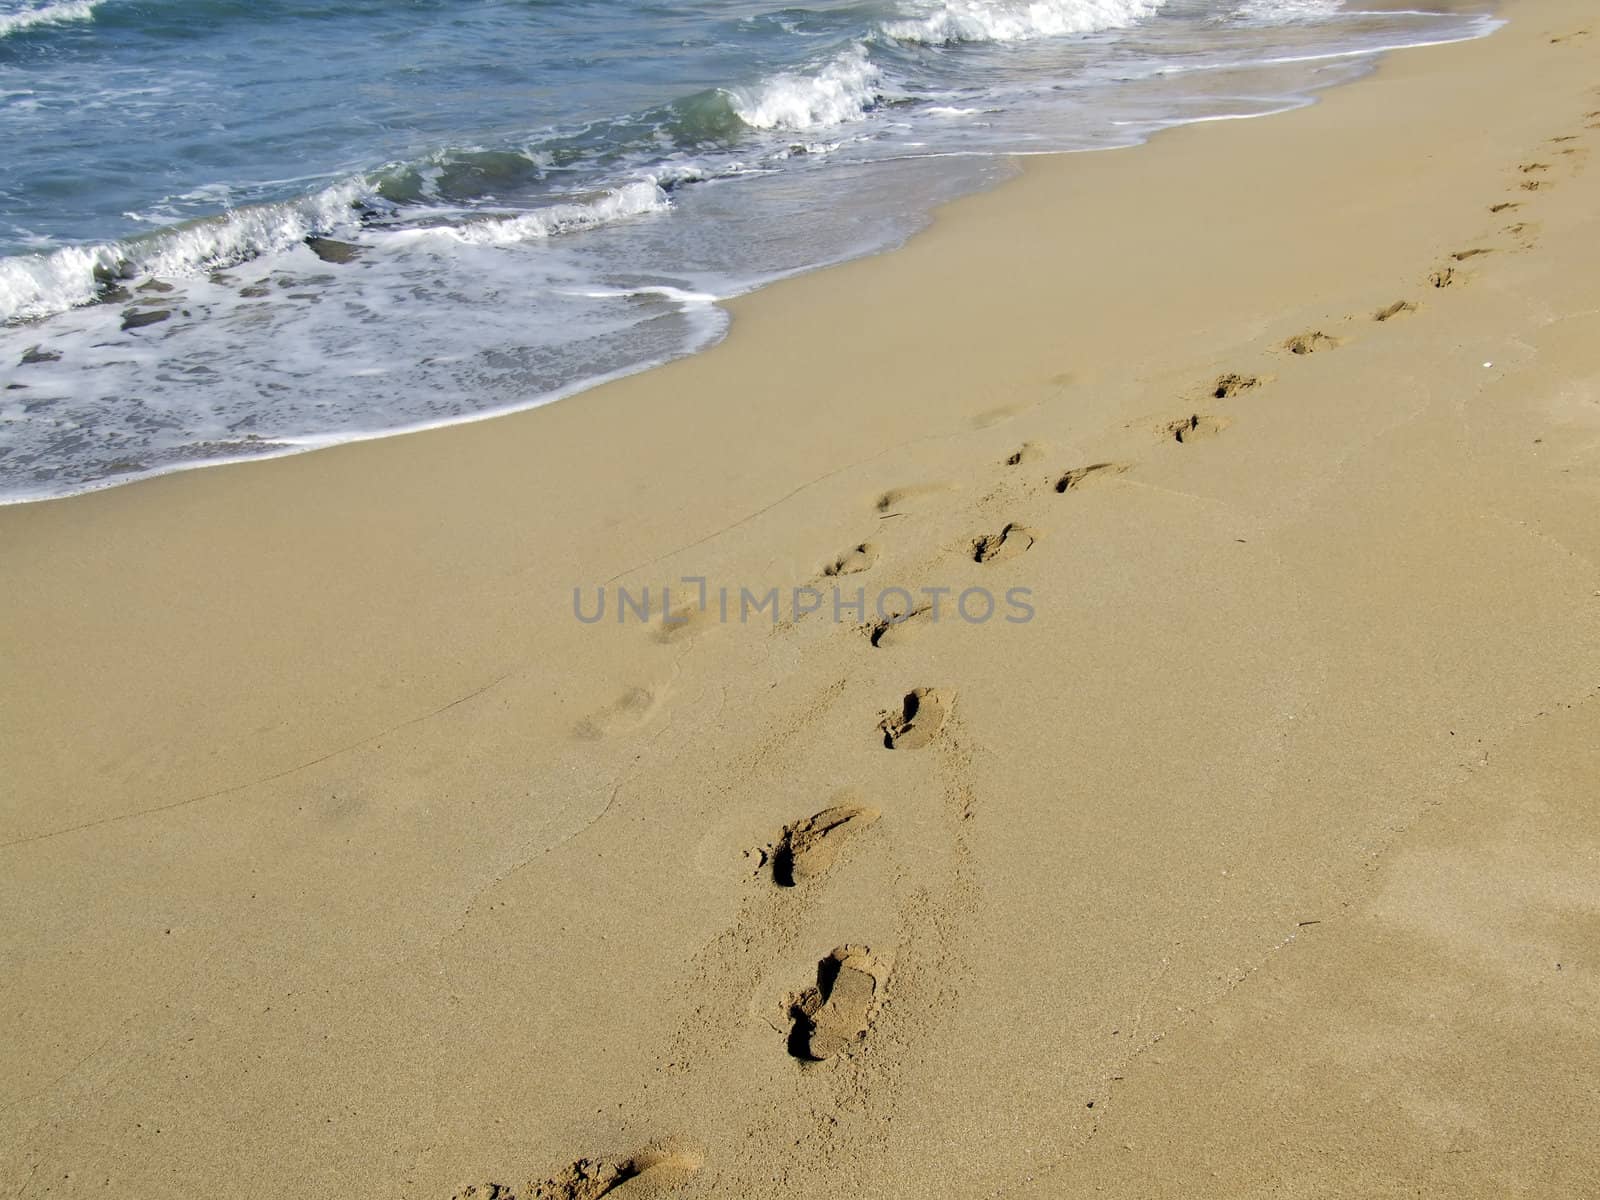 A Walk On The Beach by PhotoWorks